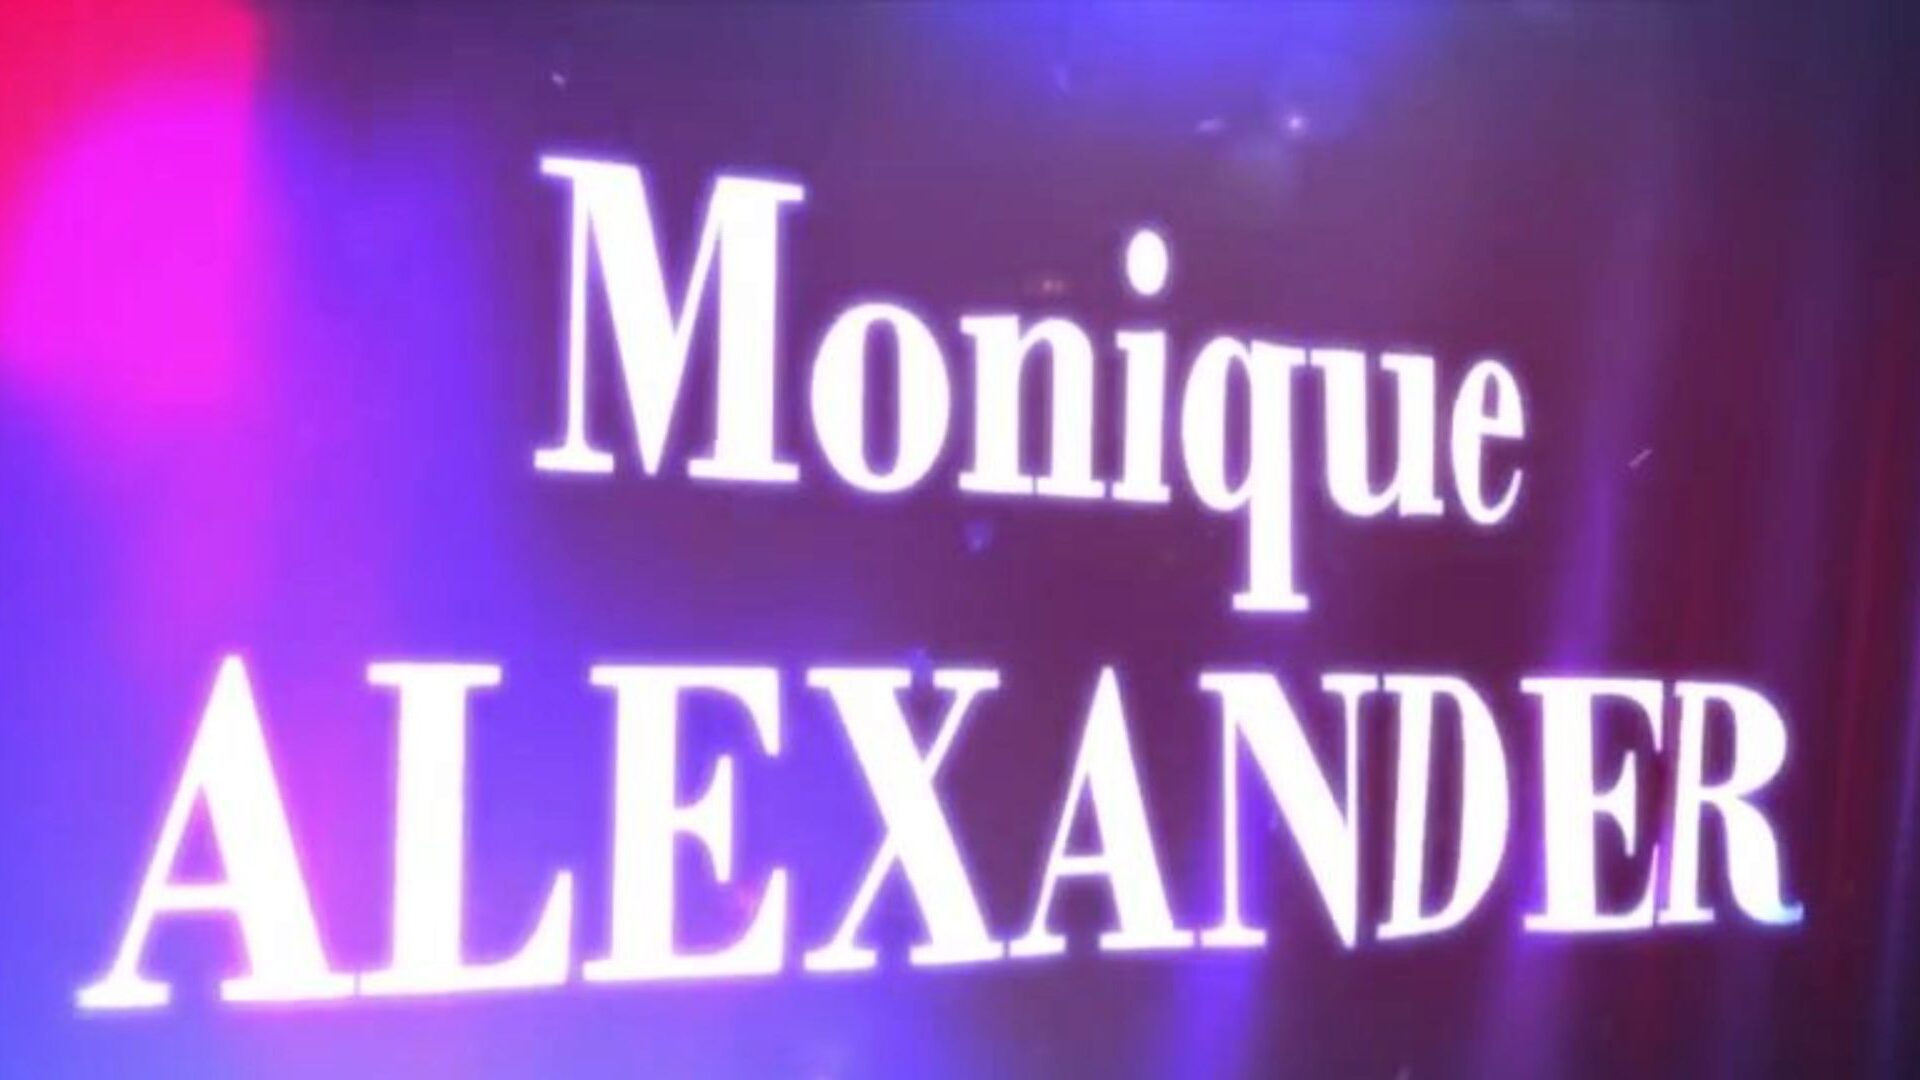 brazzers - verhalen over echte vrouwen - waarom heeft ze zo'n lange scène met monique alexander en xander in de hoofdrol